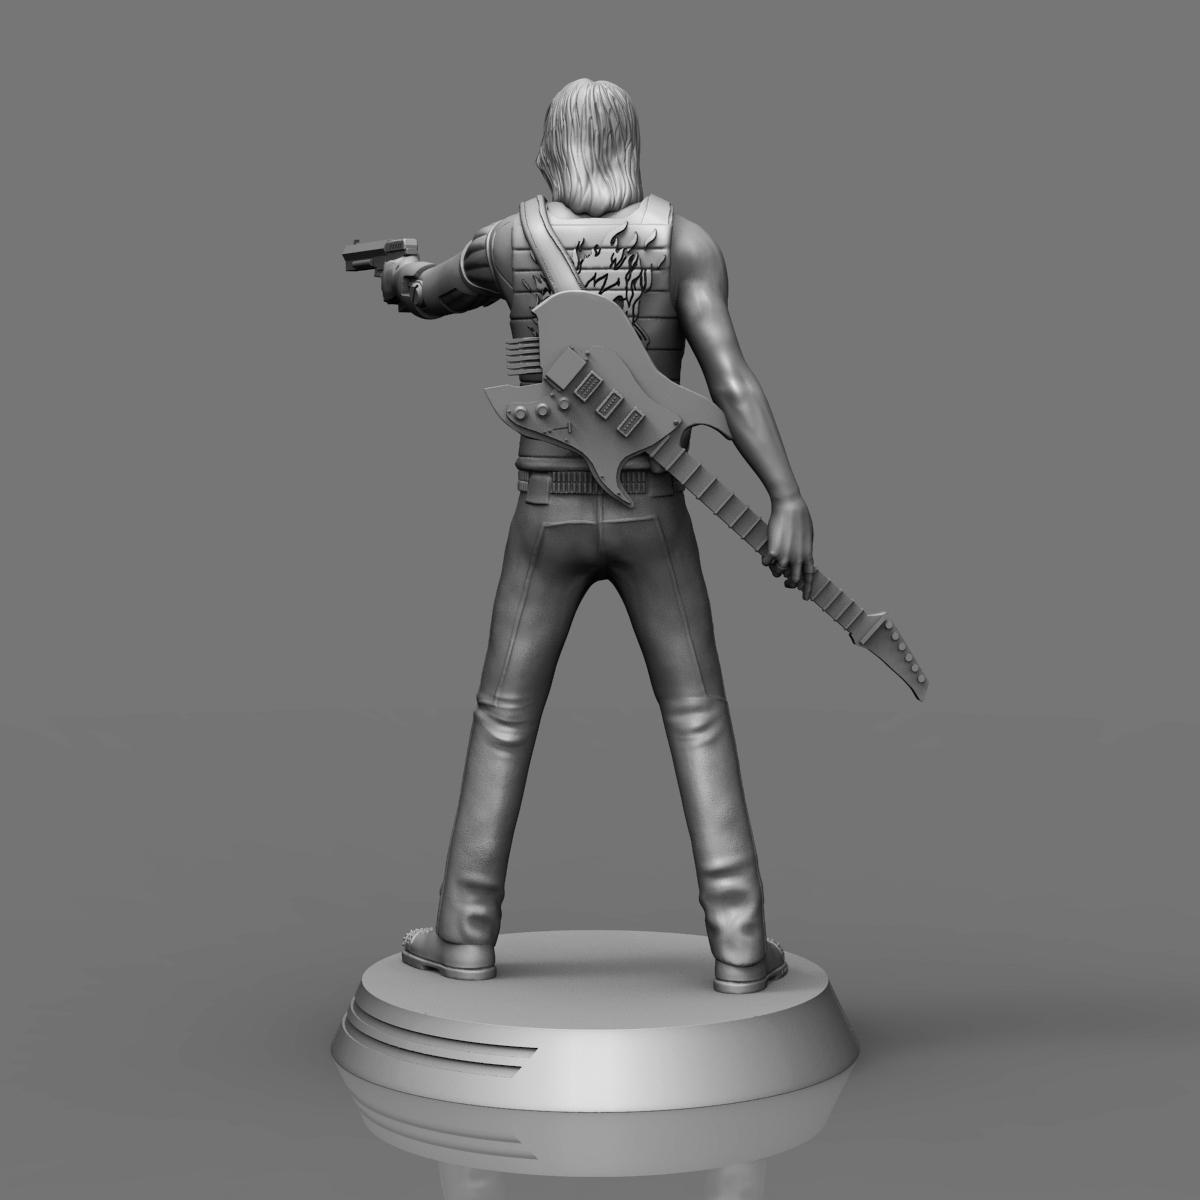 Johnny Silverhand figure - Cyberpunk 3d model